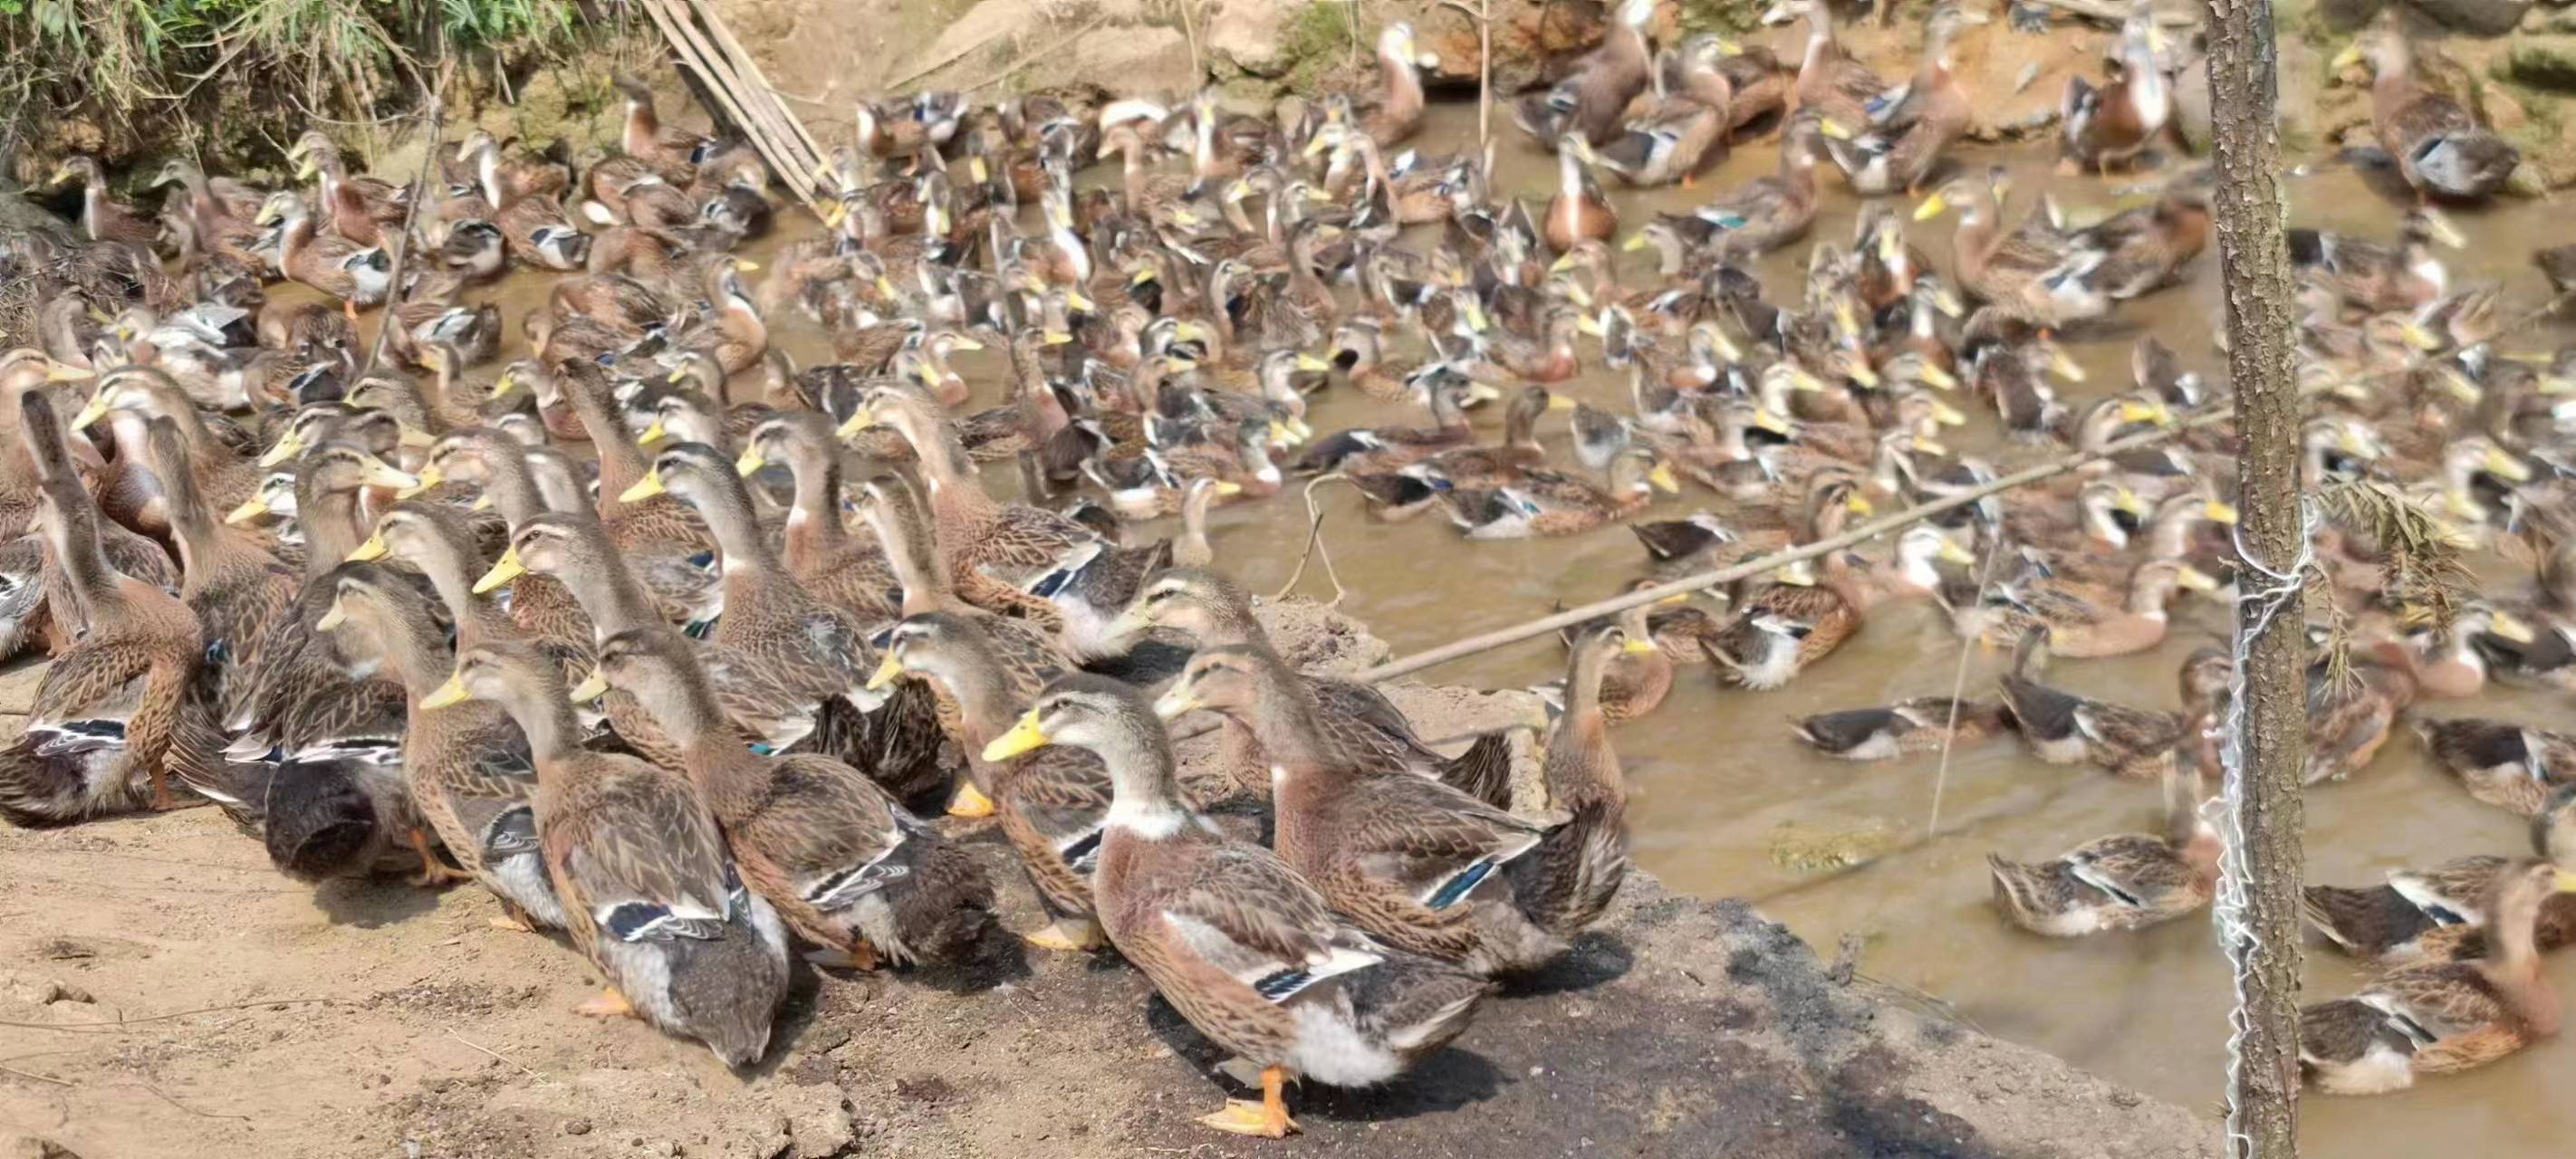 随着养鸭业规模急剧增加,养鸭场该如何有效疫病防控?